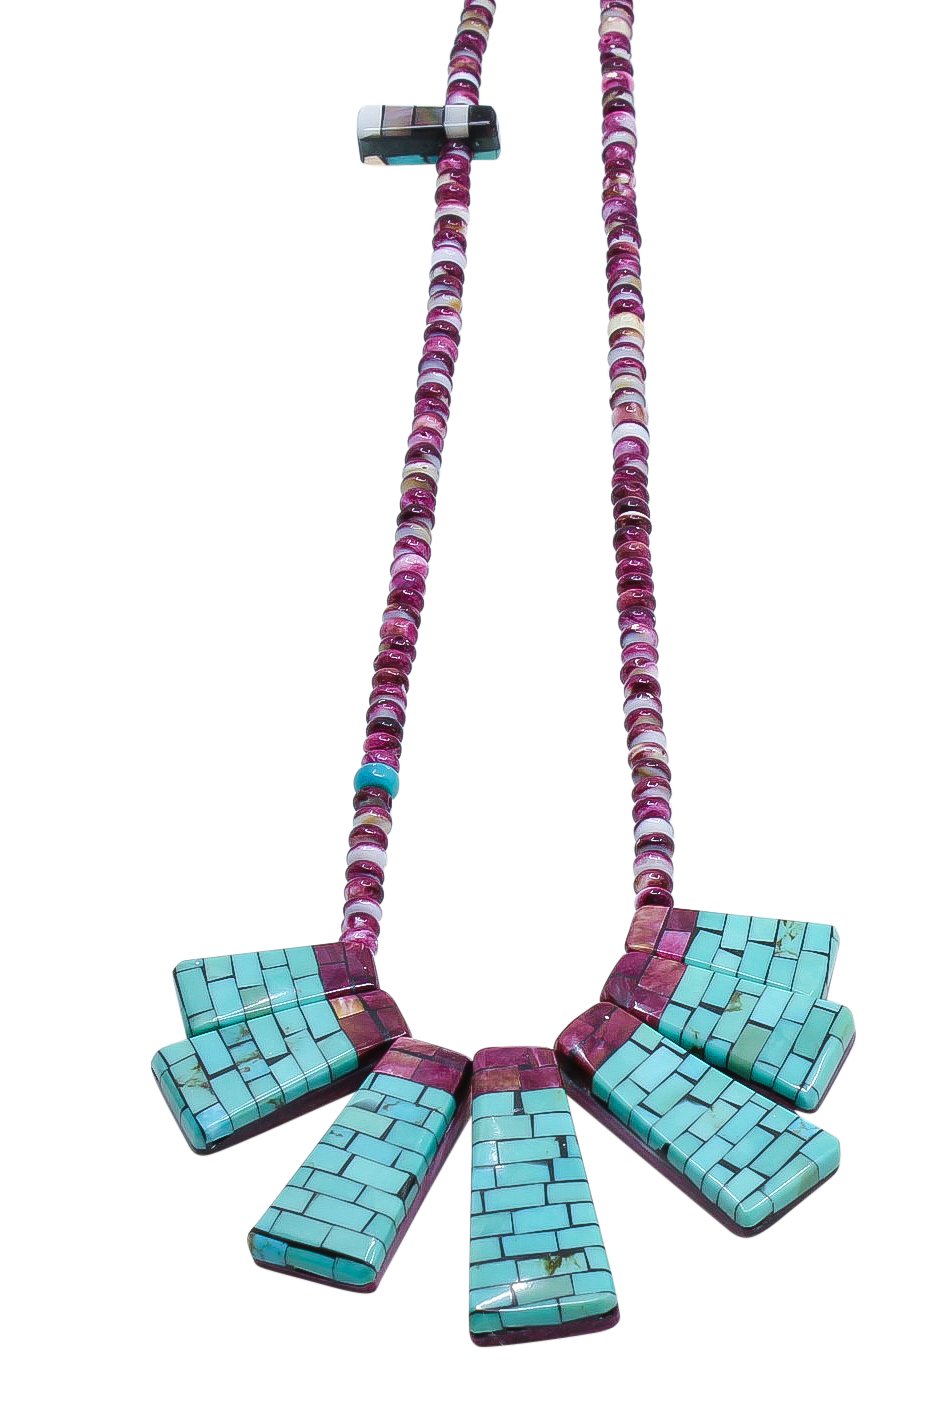 Charlene Reano Turquoise Pendant Necklace Reversible - Turquoise & Tufa